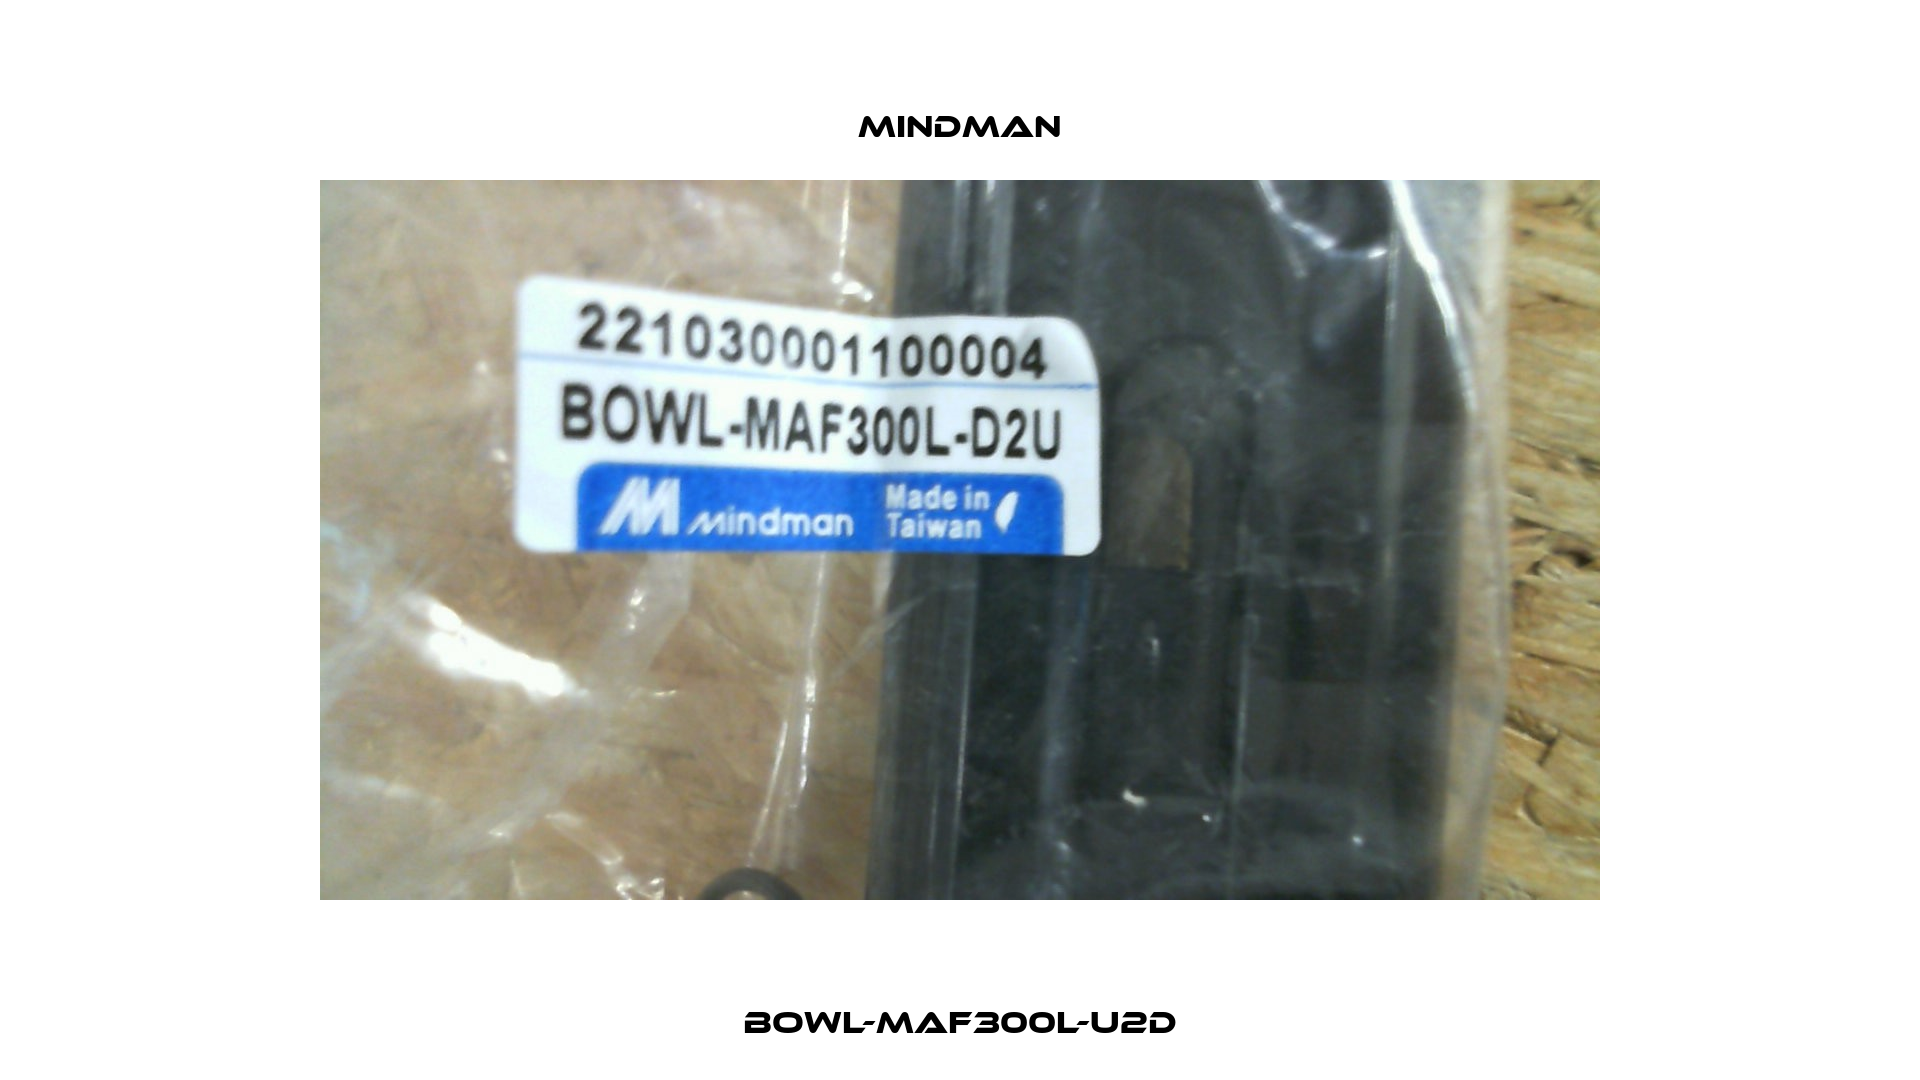 BOWL-MAF300L-U2D Mindman